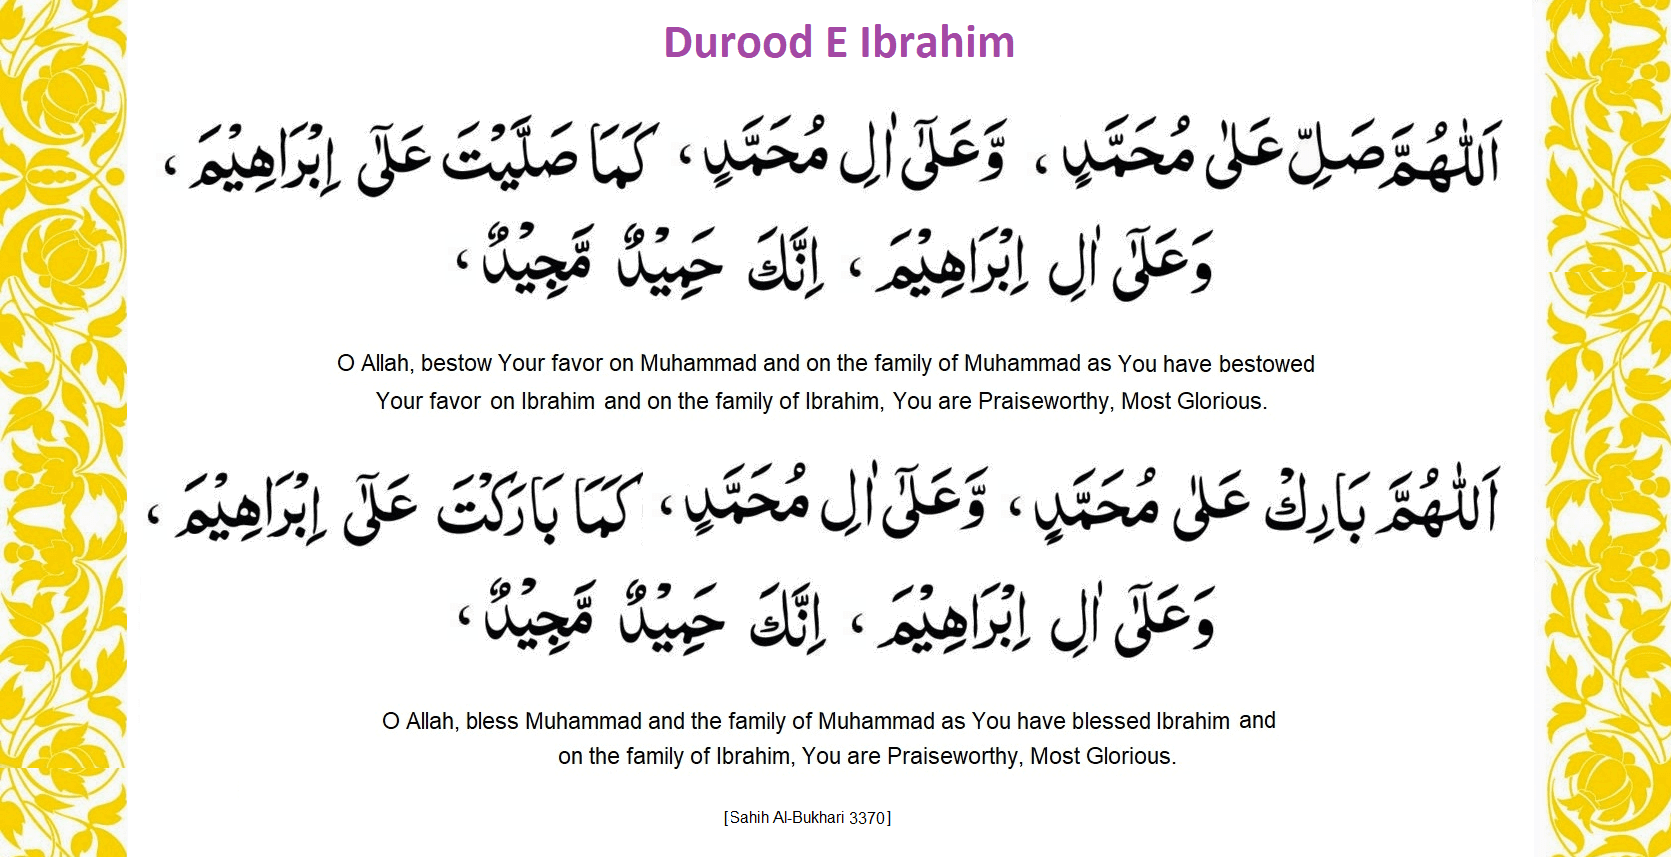 Durood sharif translation